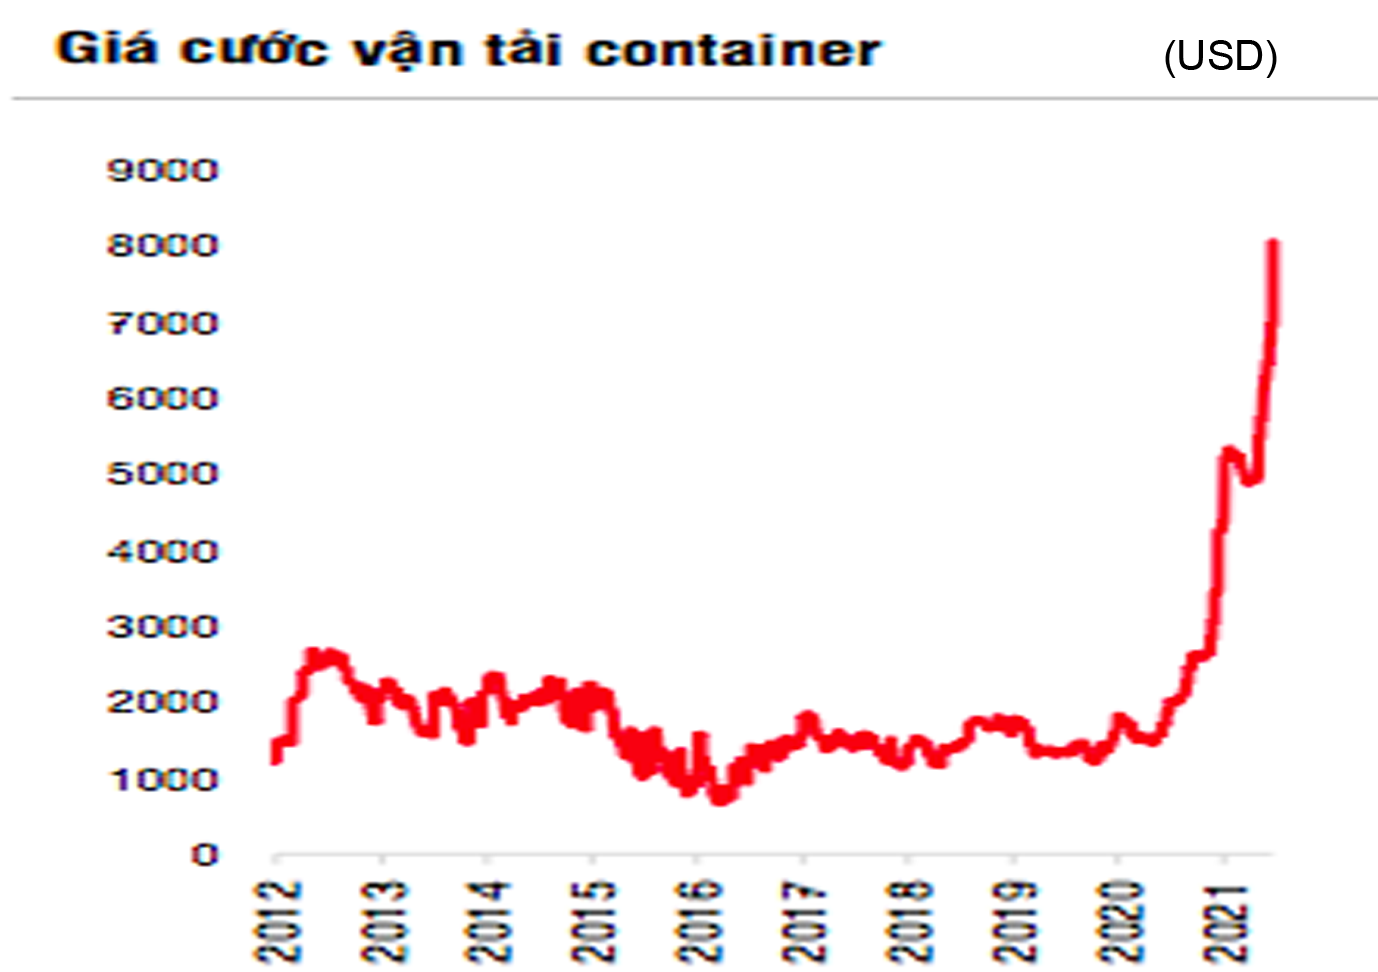  Giá cước container đã tăng gấp 4 lần mức trước dịch. Nguồn: SSI Research